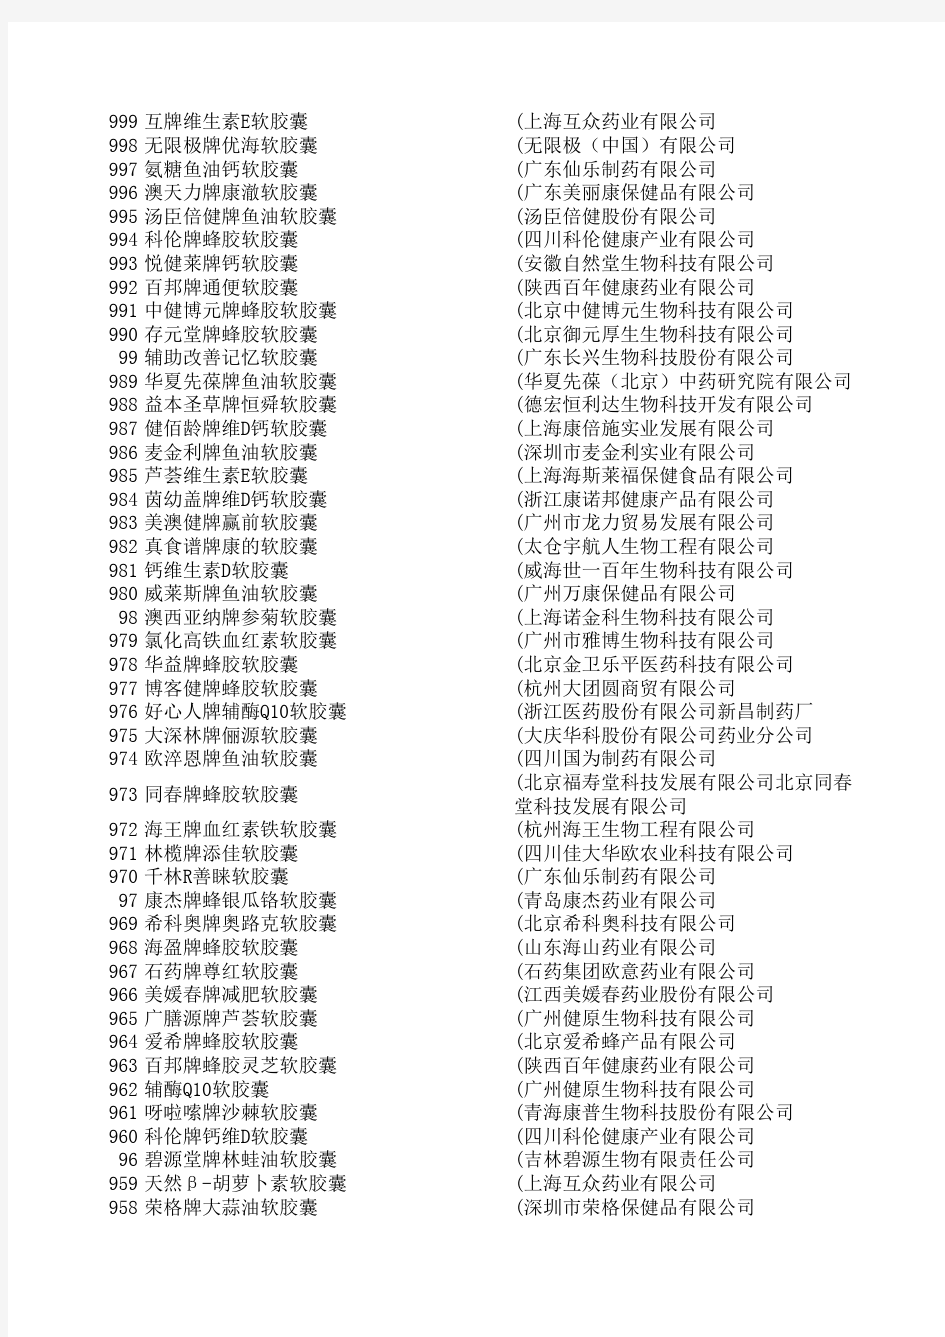 中国保健品软胶囊生产企业目录表